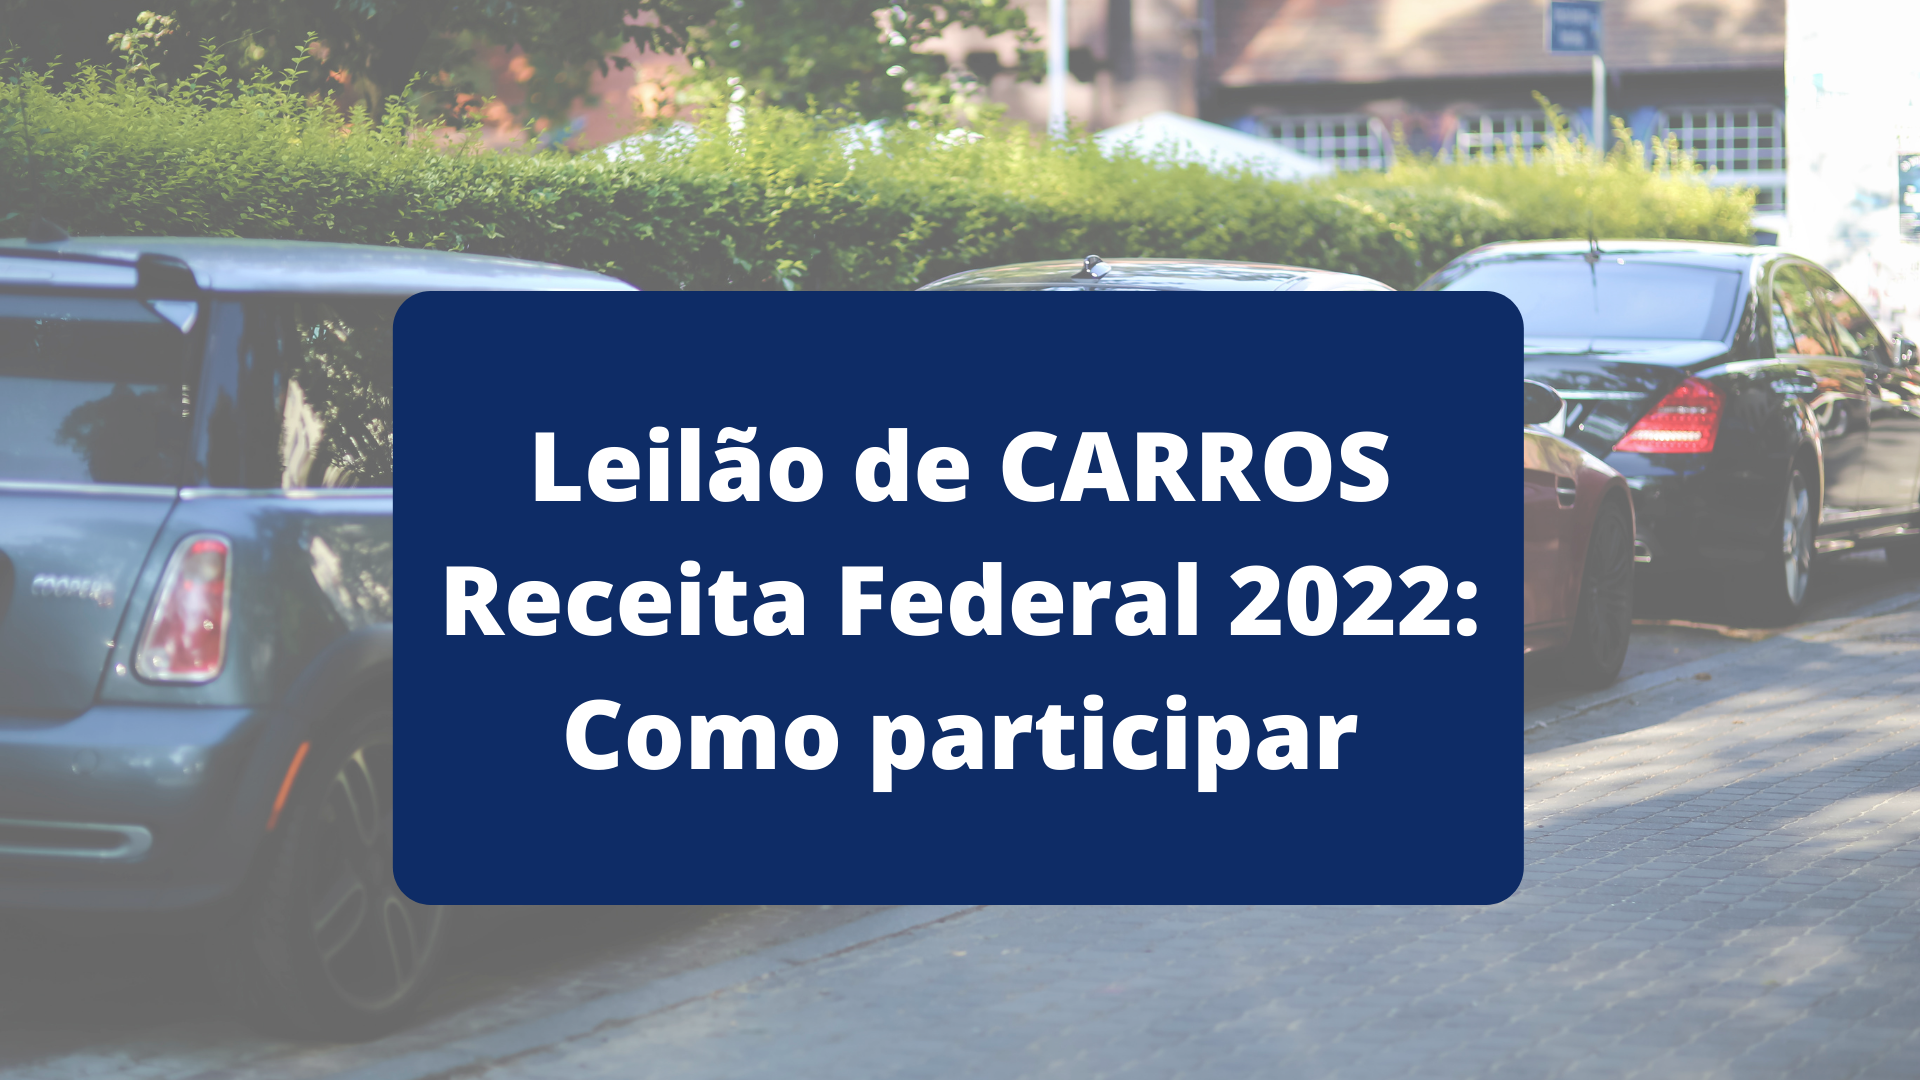 Leilão de CARROS Receita Federal 2022: Como participar